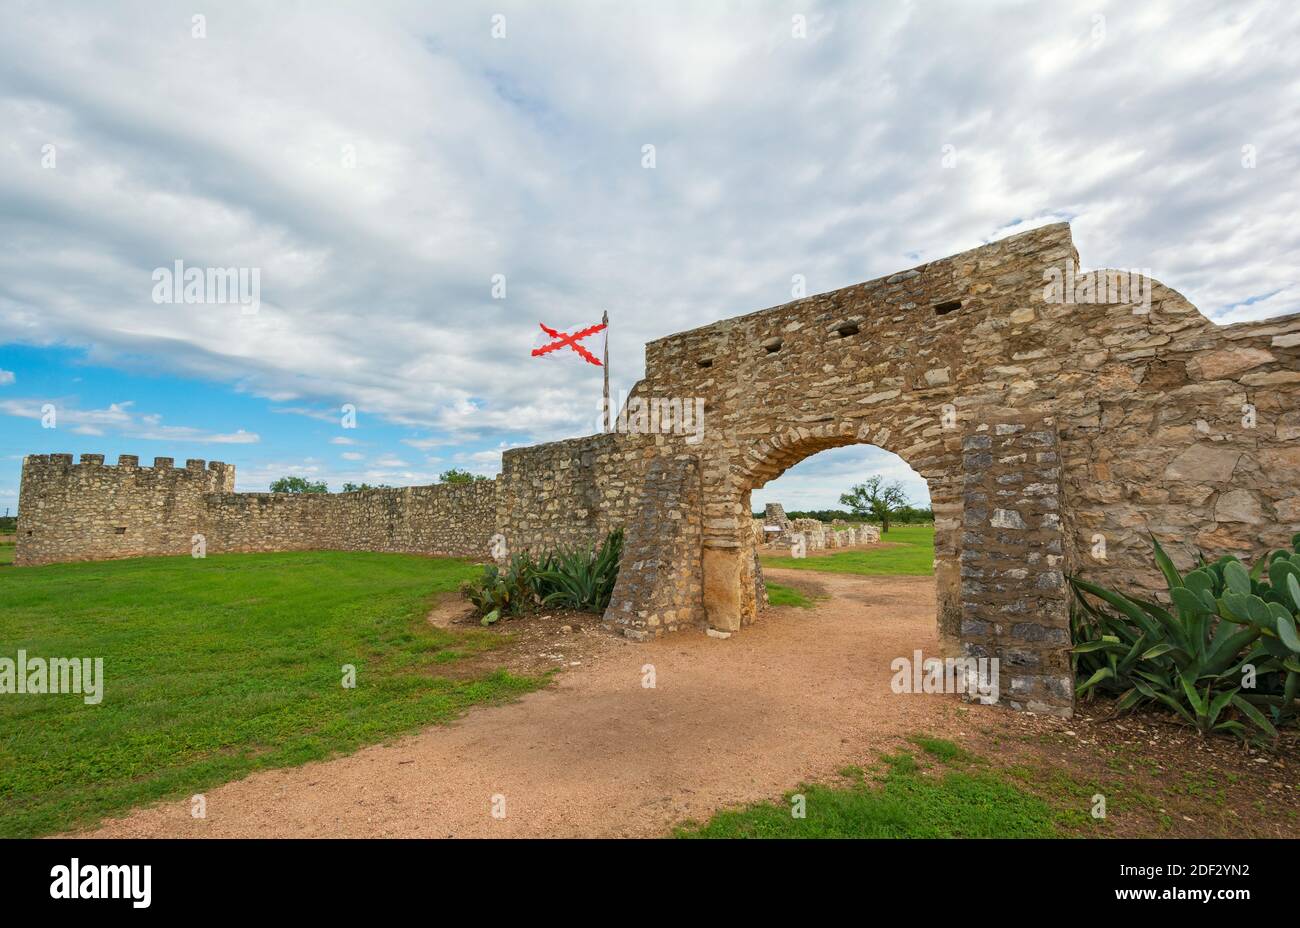 Texas, Menard County, Presidio de San Saba, fort circa mid 18C Stock Photo